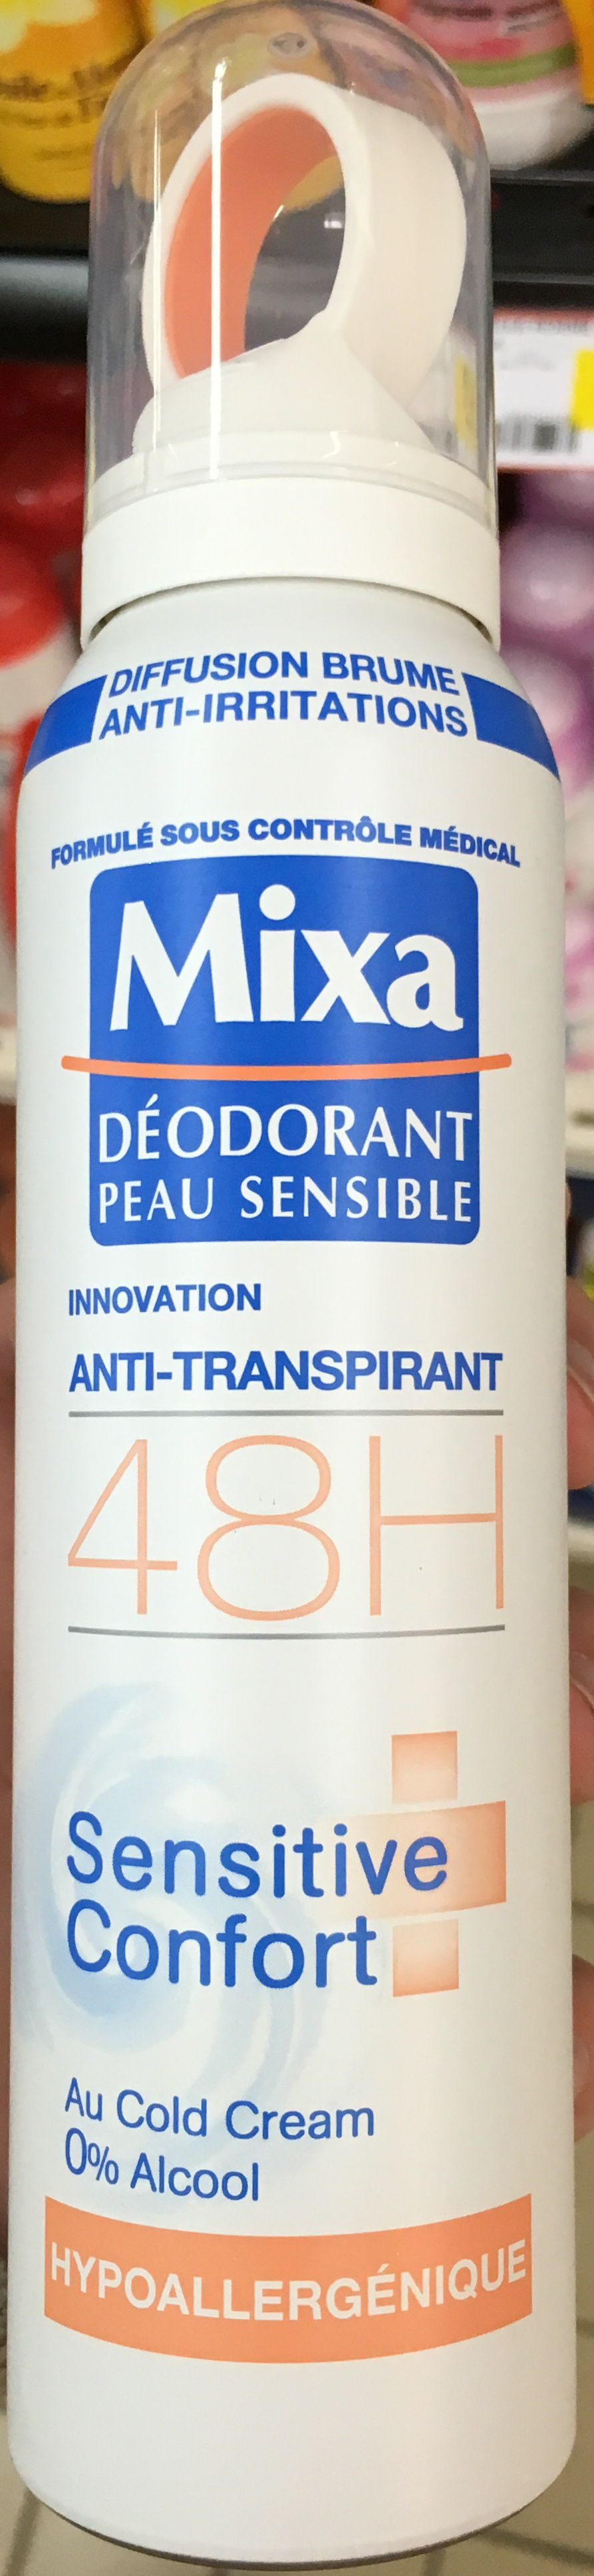 Déodorant peau sensible innovation anti-transpirant 48H Sensitive Confort Hypoallergénique - Product - fr